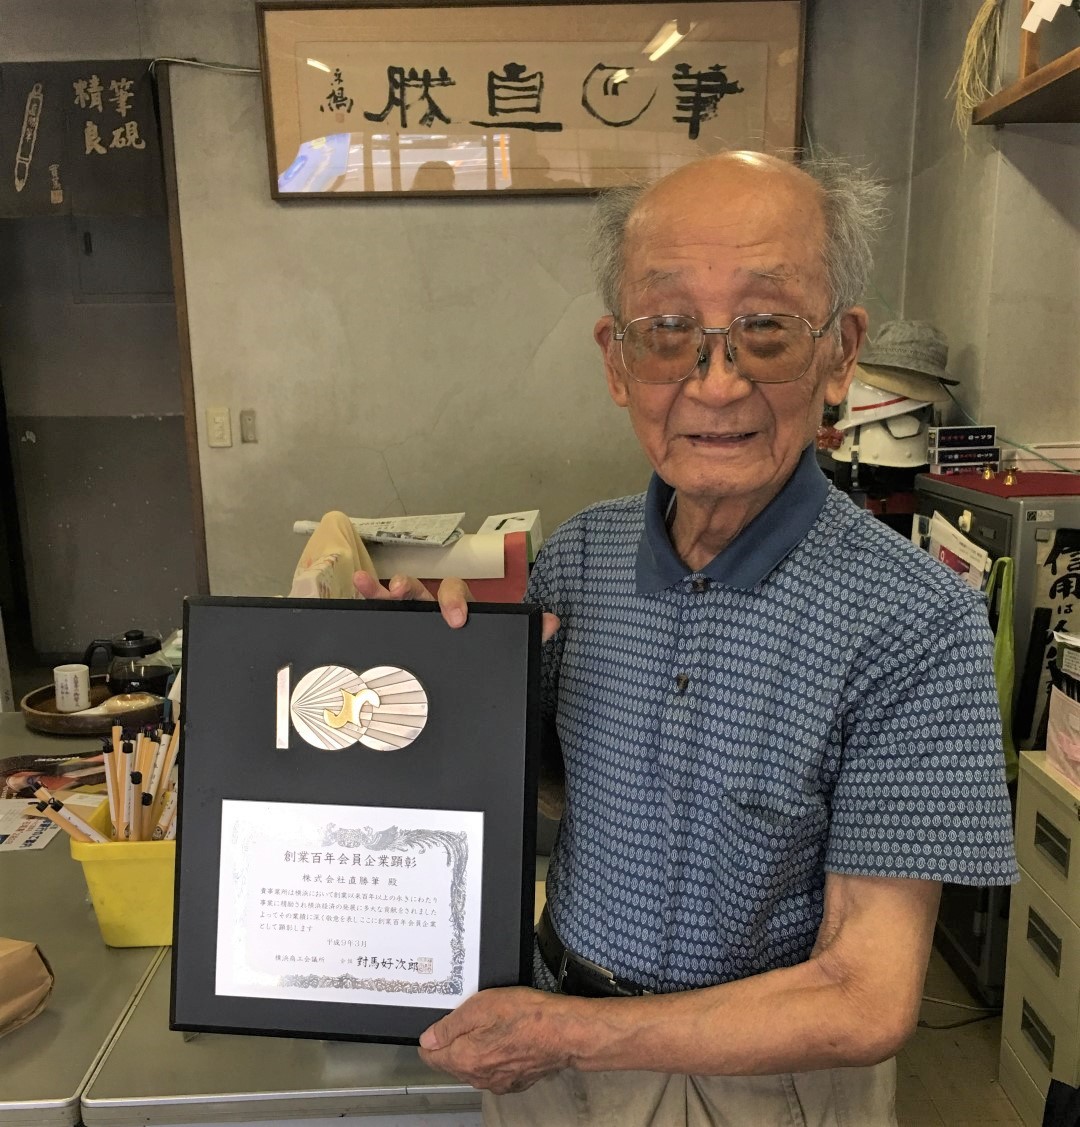 日本創業百年企業-株式會社 直勝筆,高齡94歲的社長